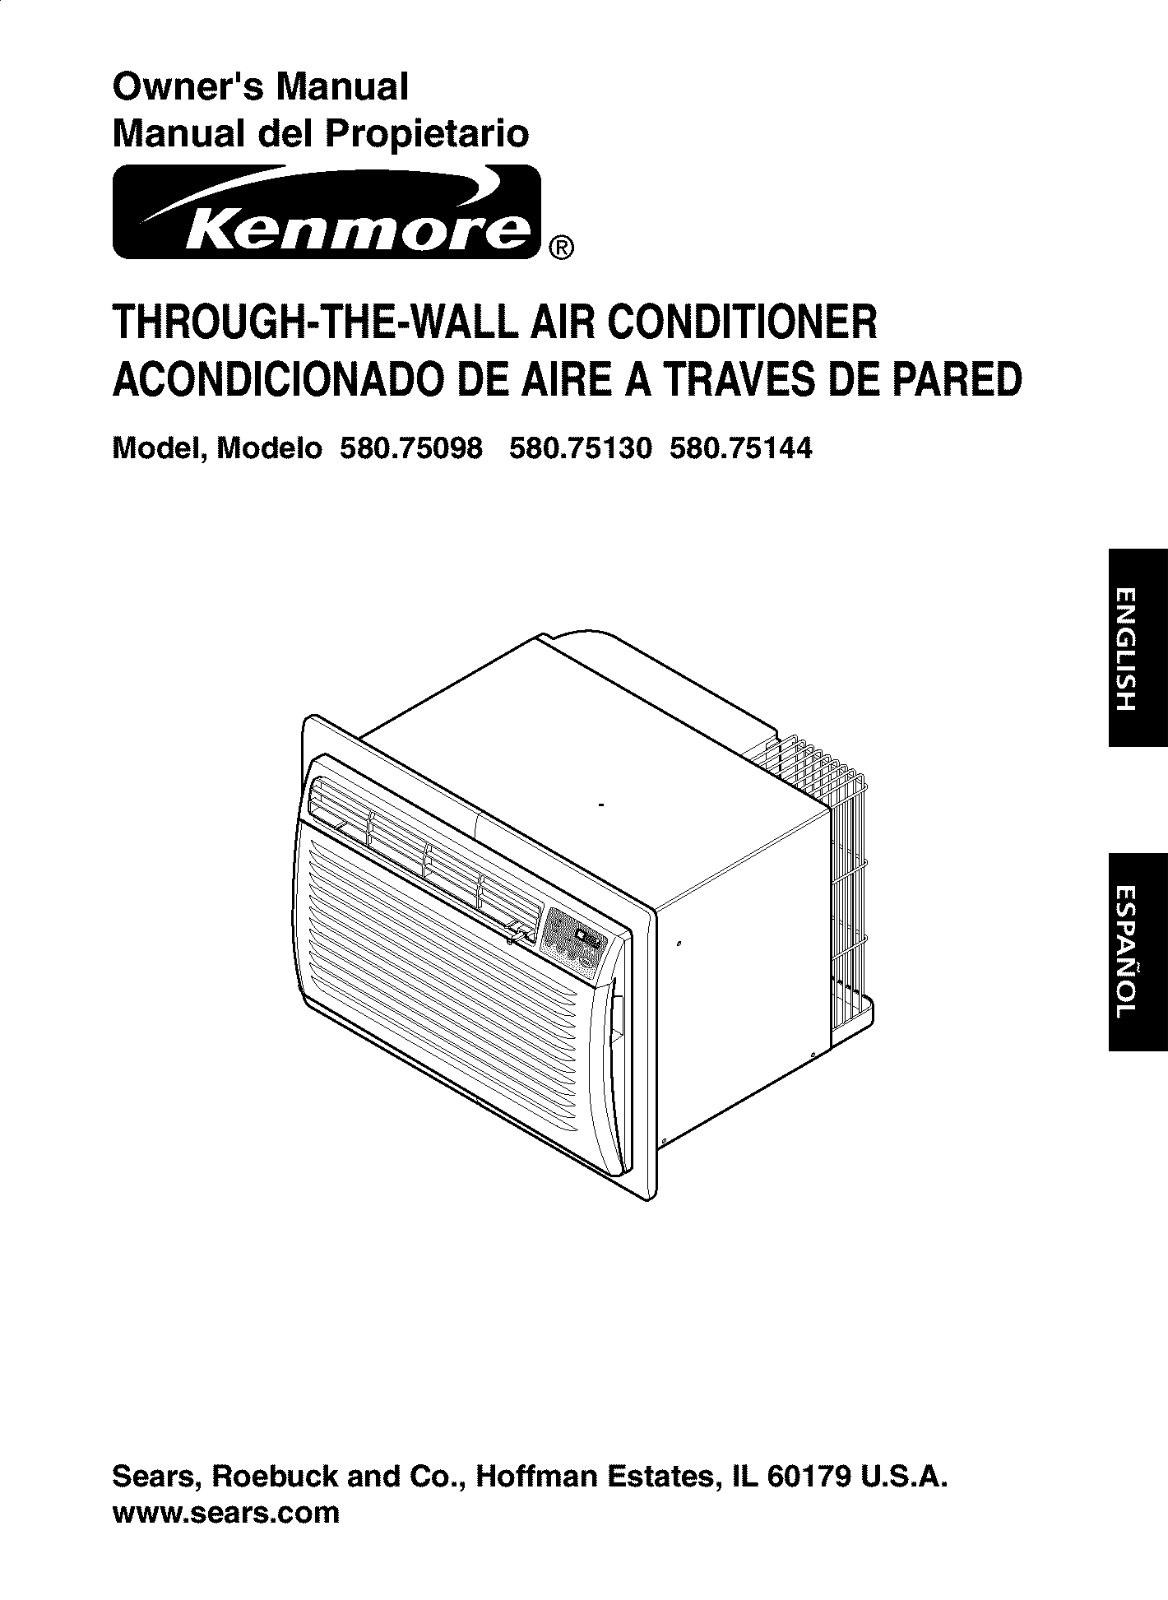 Kenmore 75130, 580.75144500, 580.75130500, 580.75098500 Owner's Manual